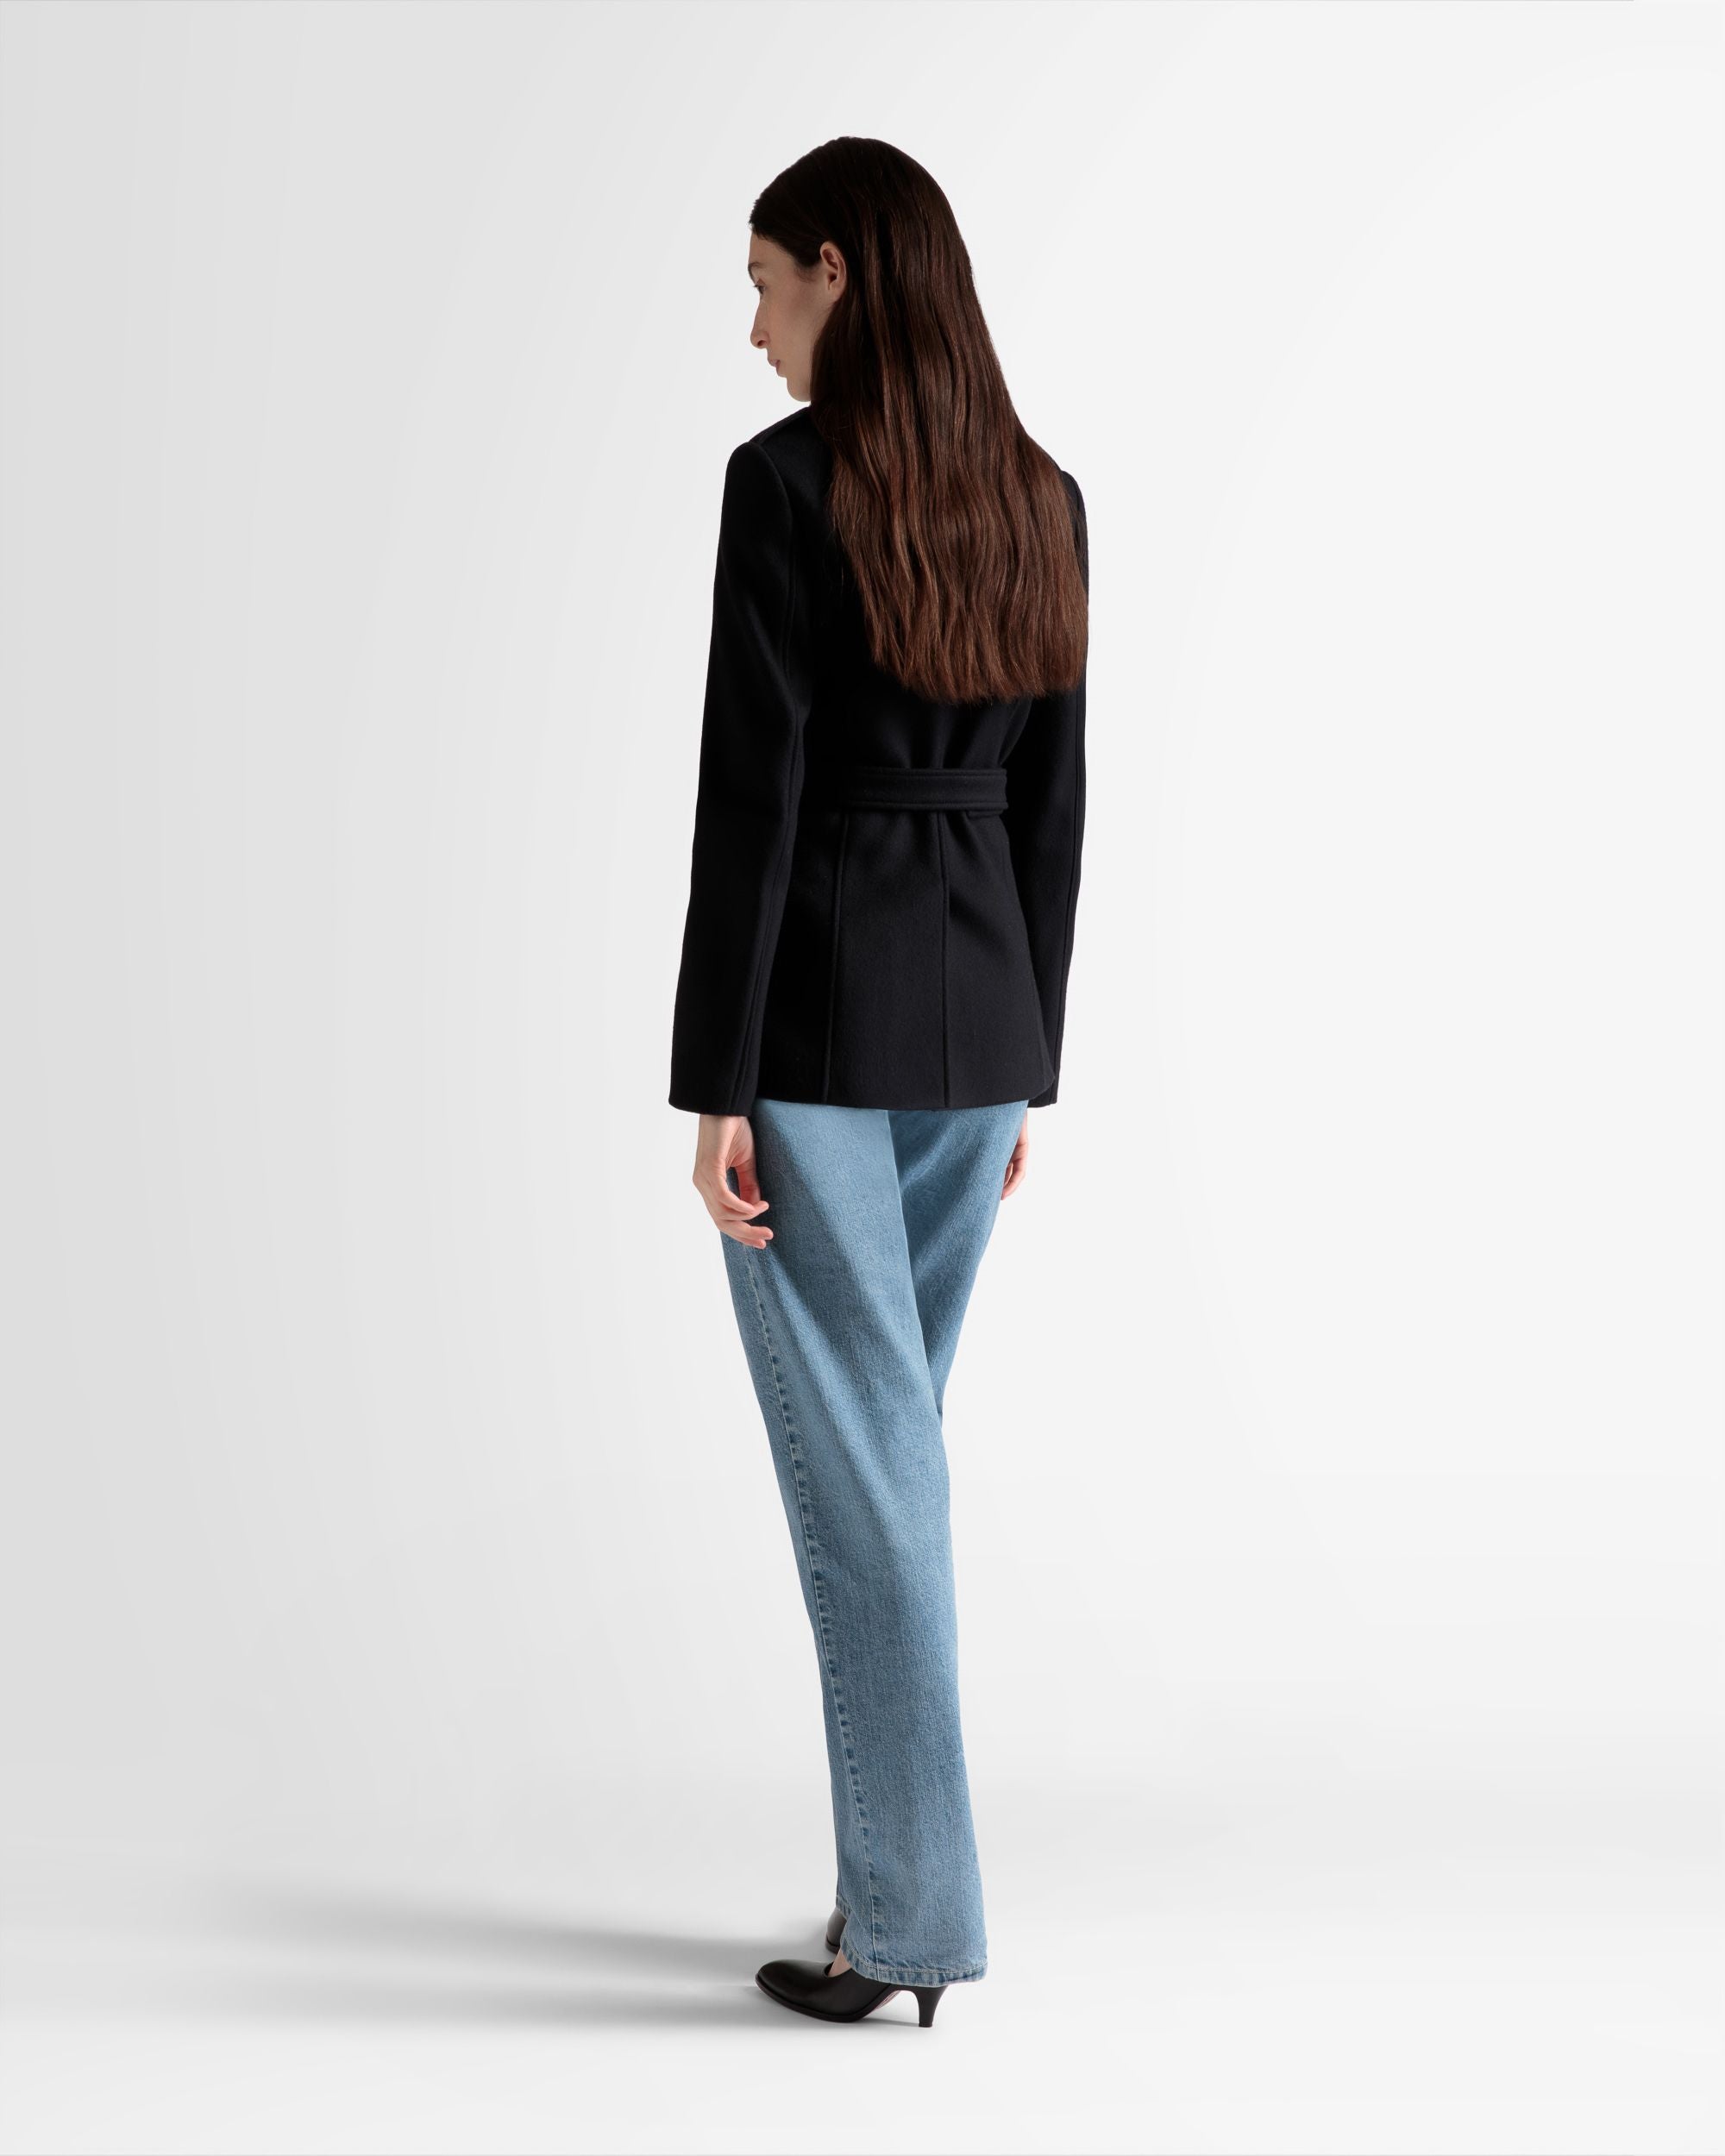 Belted Jacket | Women's Outerwear | Navy Wool | Bally | On Model Back